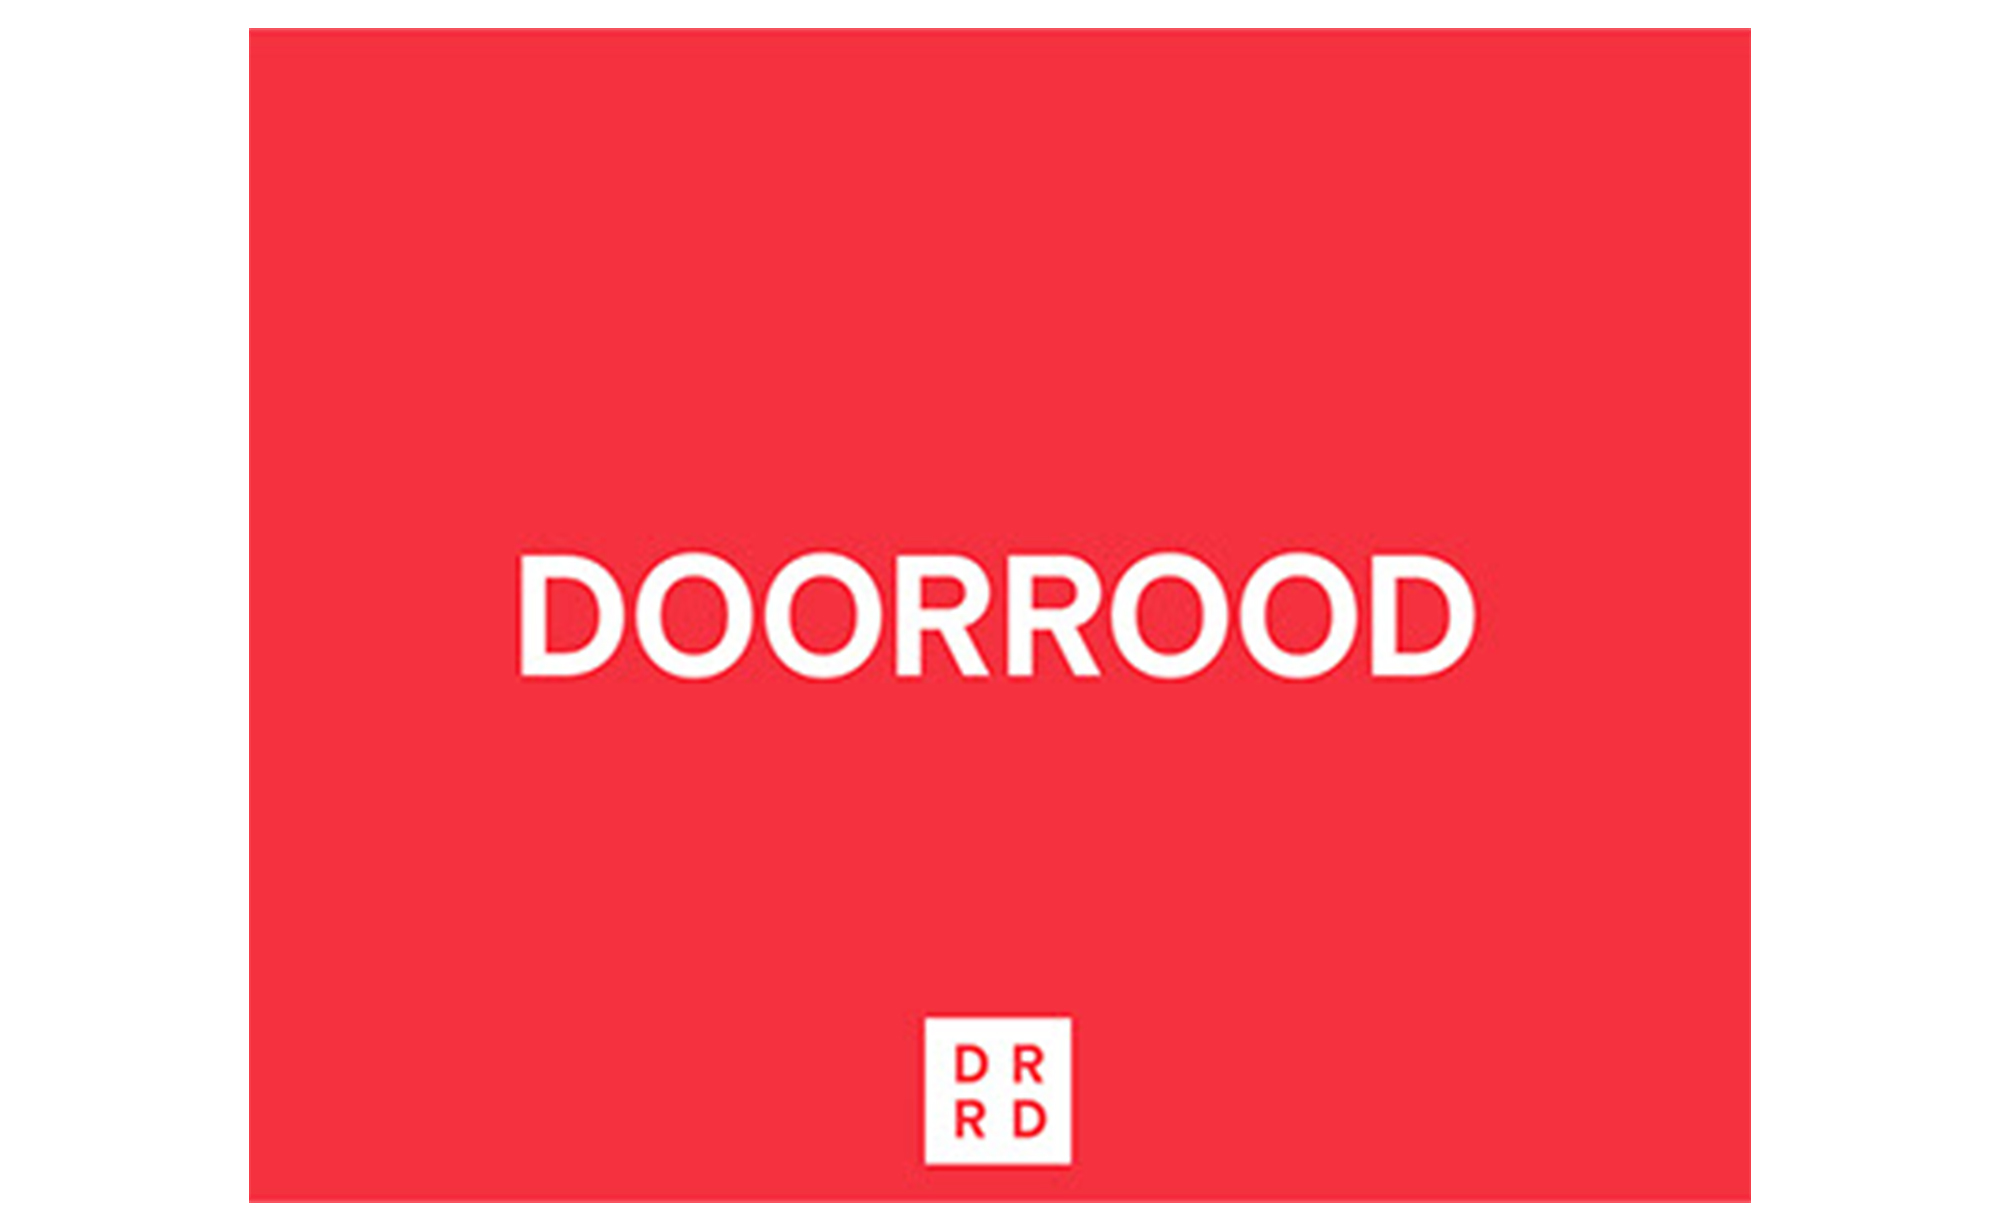 Doorrood